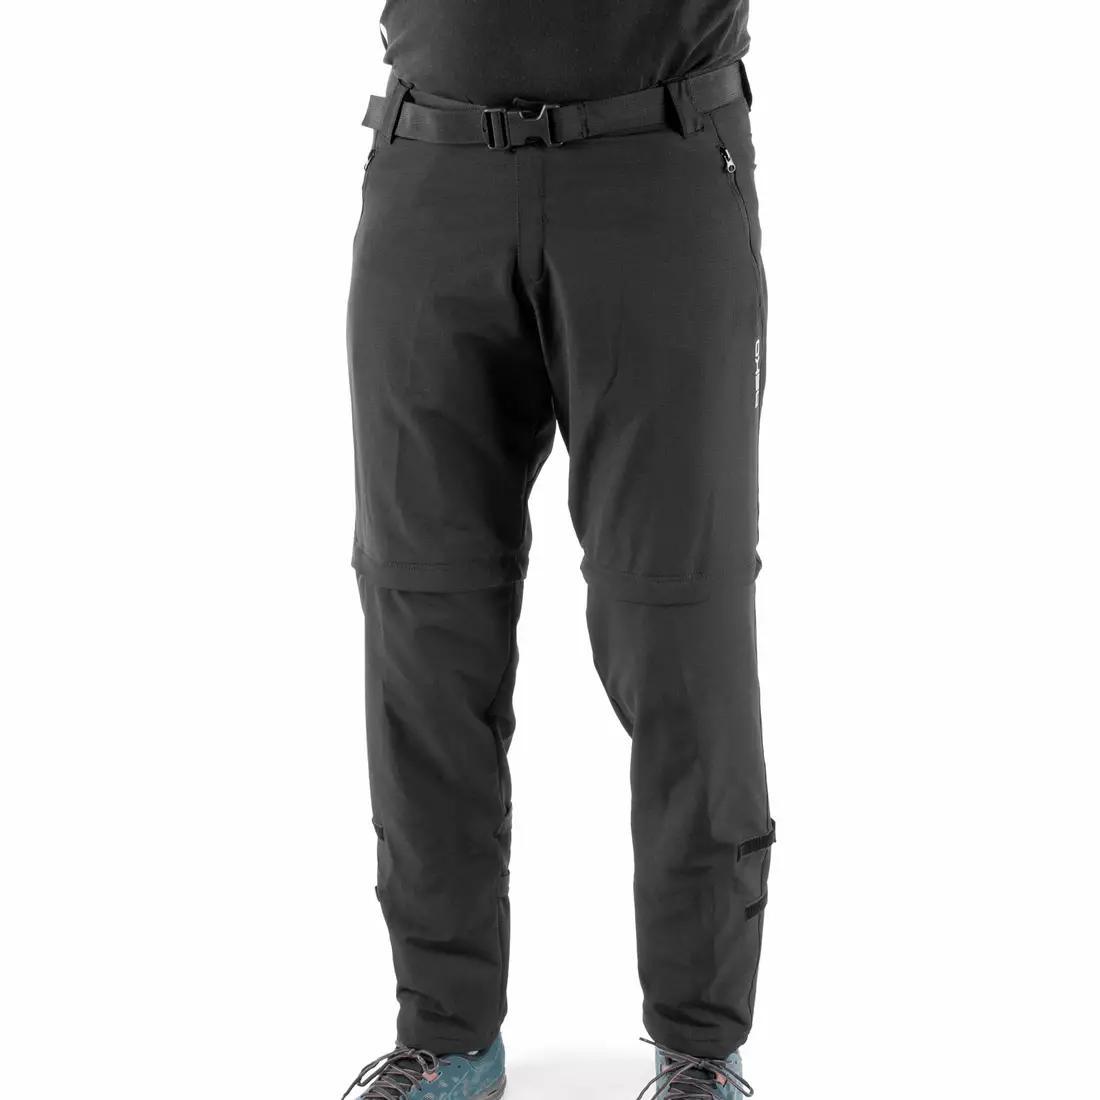 DEKO STR-M-001 pánské cyklistické kalhoty s odepínatelnými nohami, černé